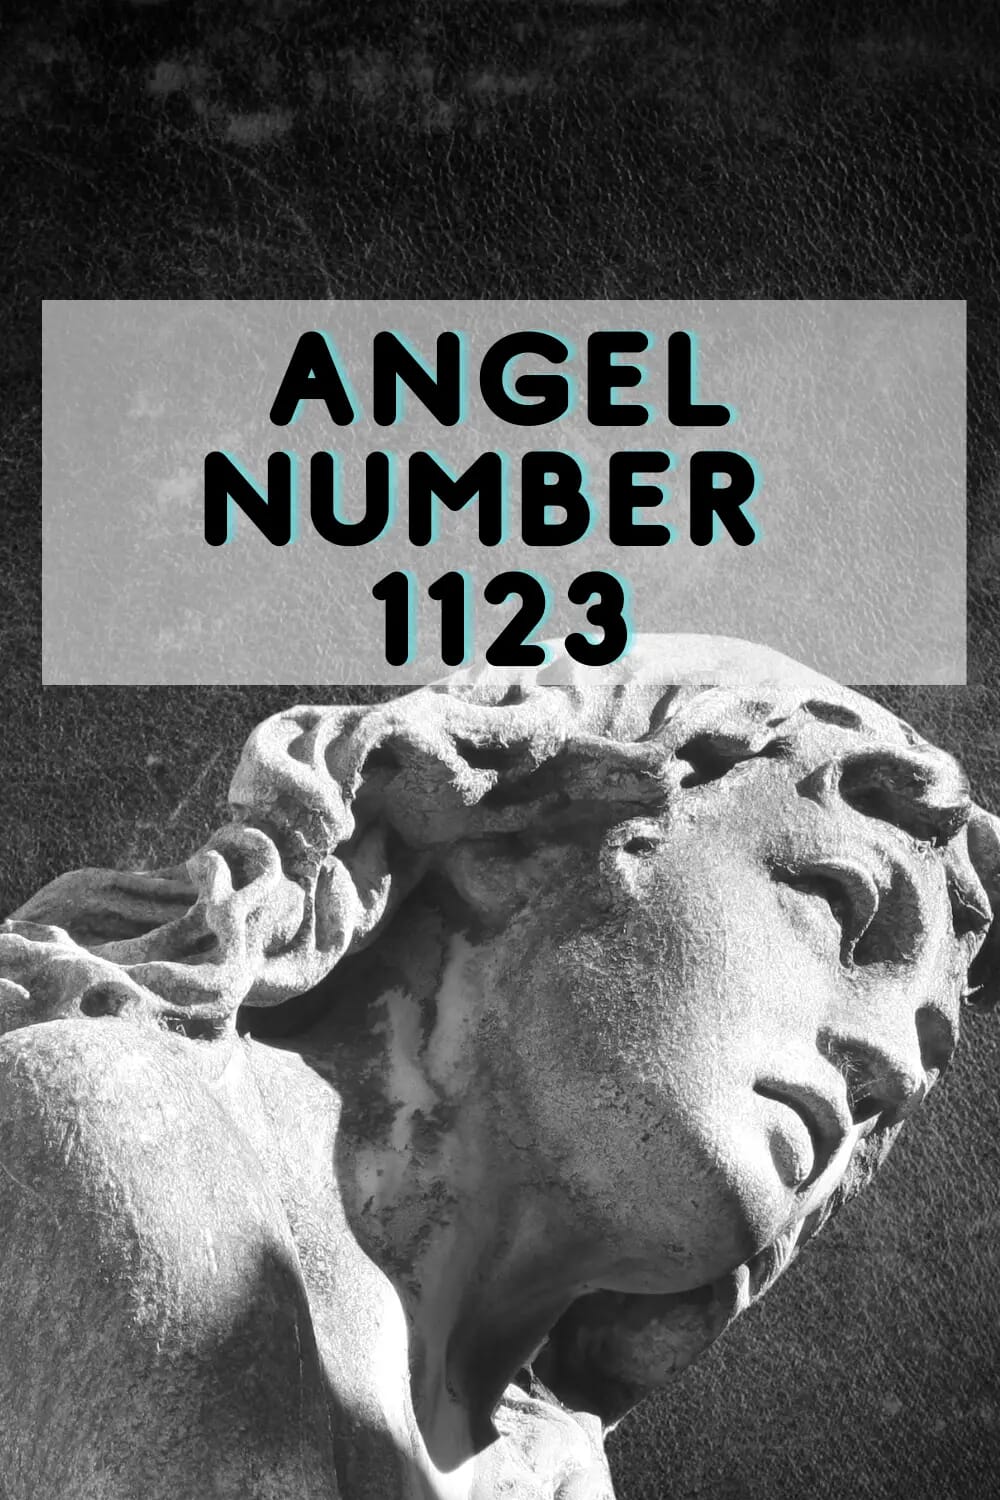 Angel number 1123